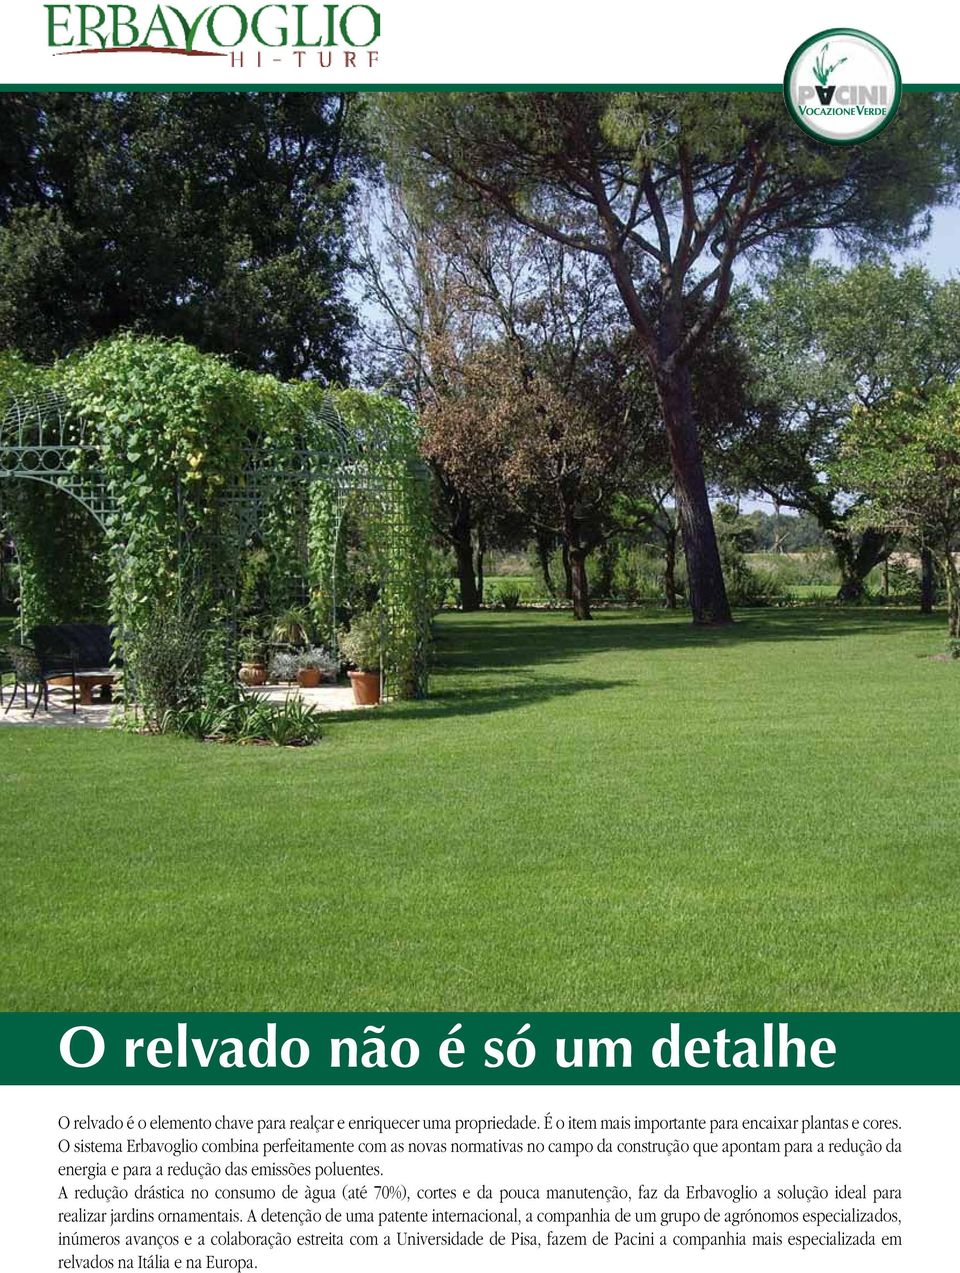 A redução drástica no consumo de àgua (até 70%), cortes e da pouca manutenção, faz da Erbavoglio a solução ideal para realizar jardins ornamentais.